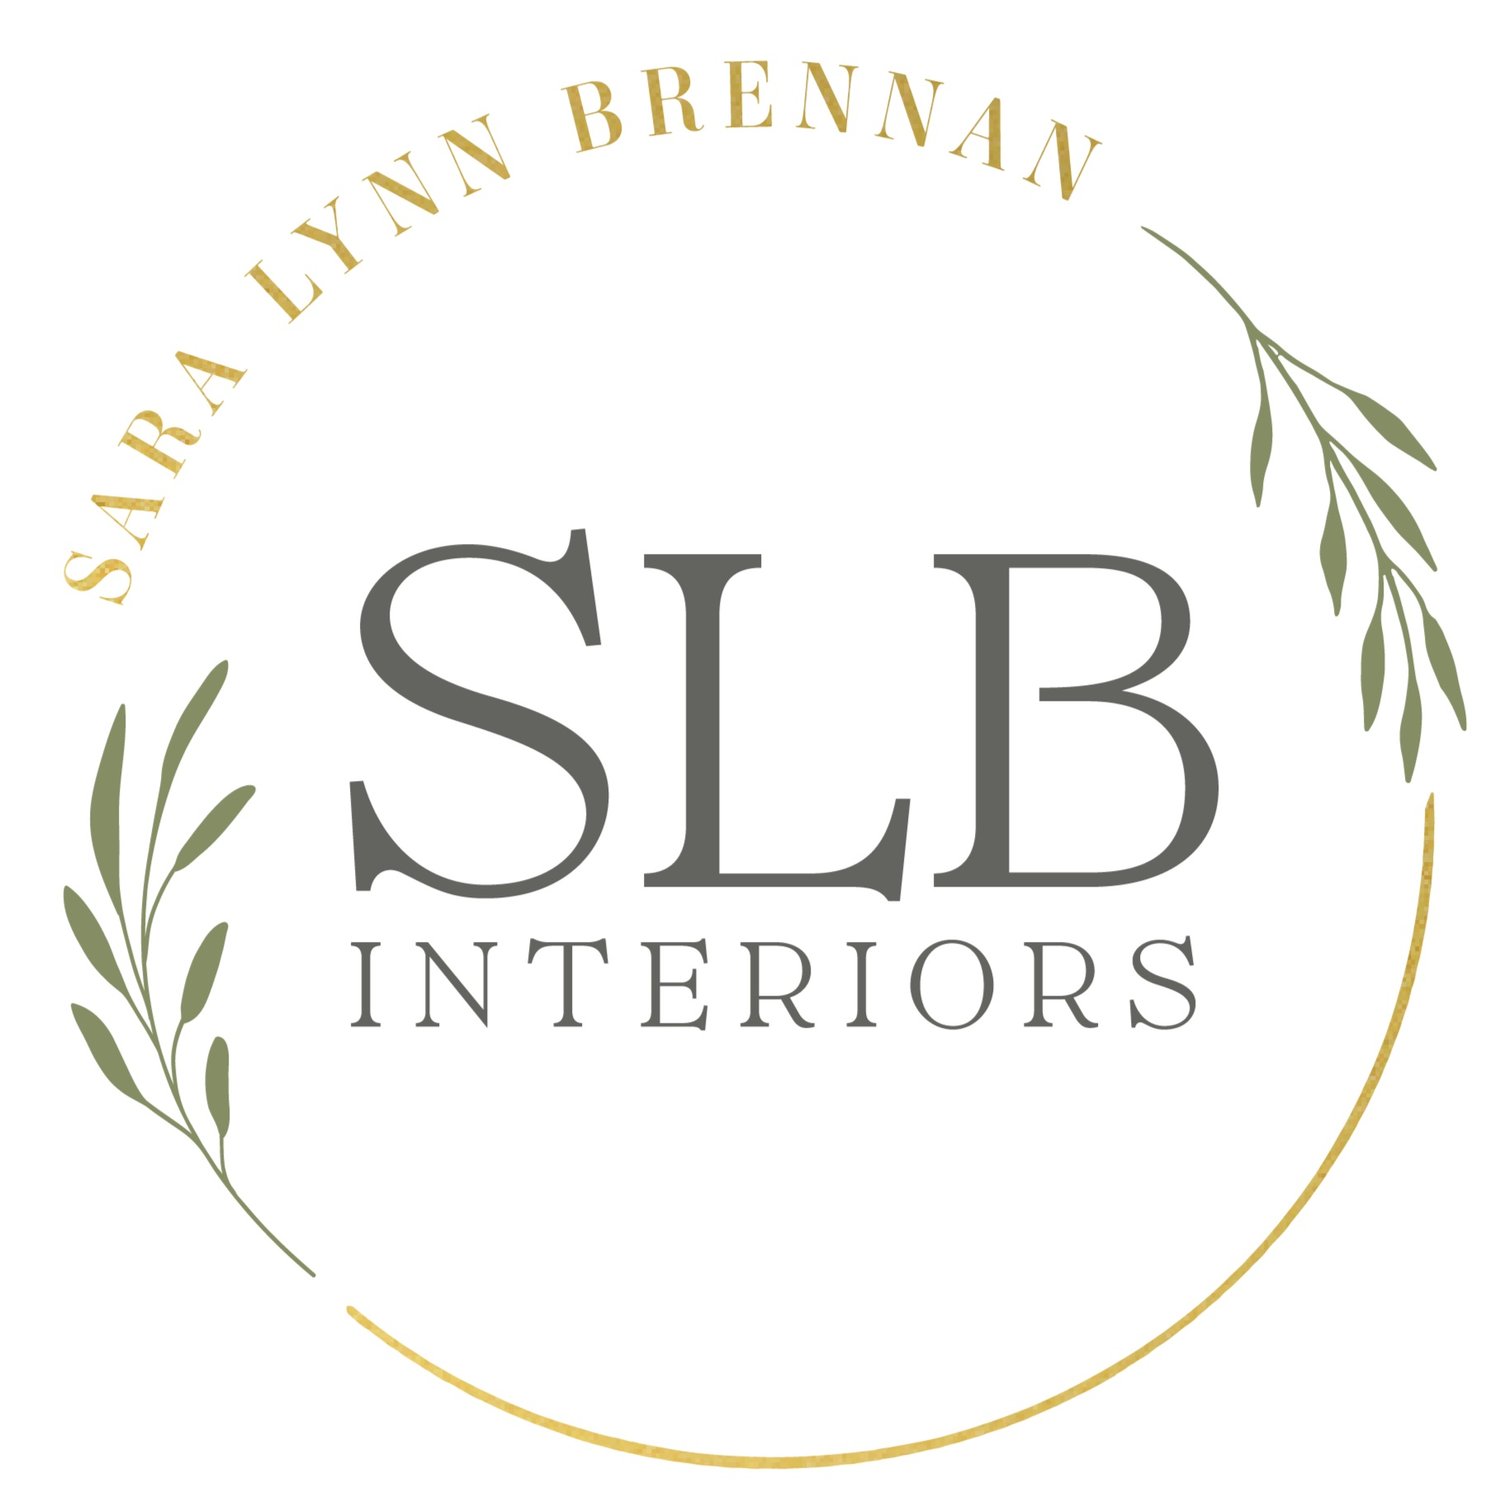 Sara Lynn Brennan Interiors | Charlotte Interior Designer